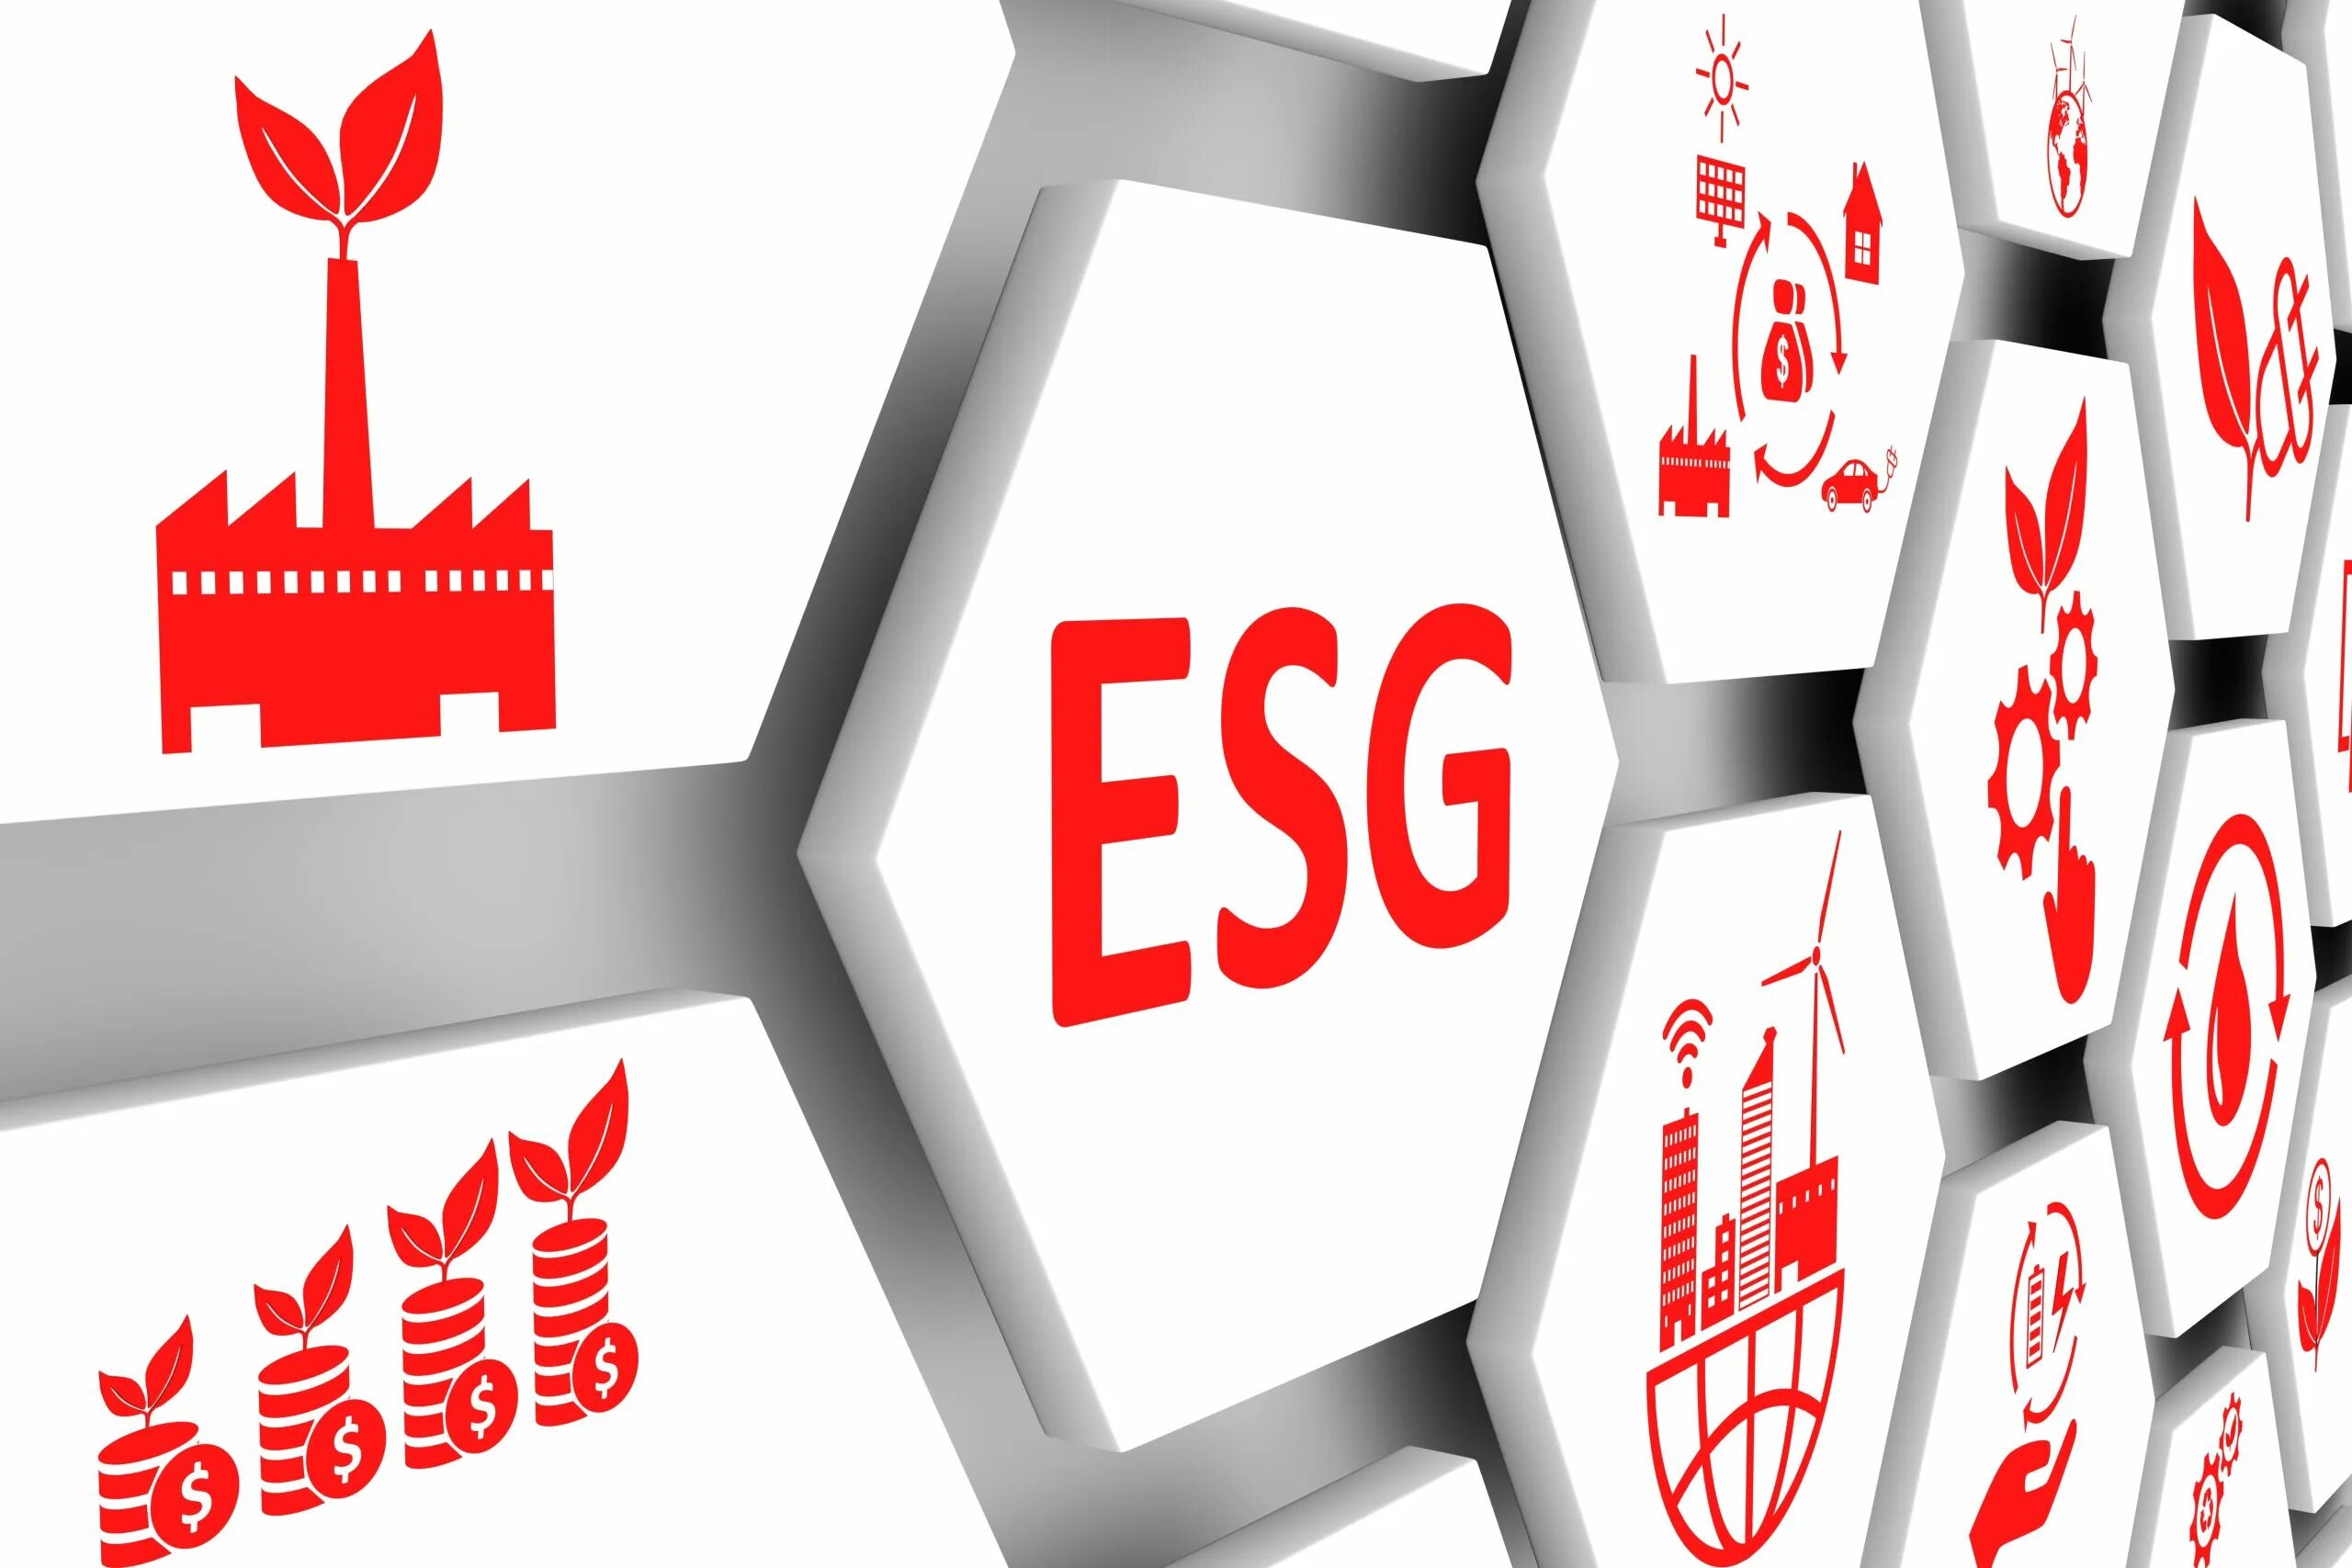 Esg деятельности. ESG стратегия. ESG инвестиции. ESG рейтинг. ESG повестка.